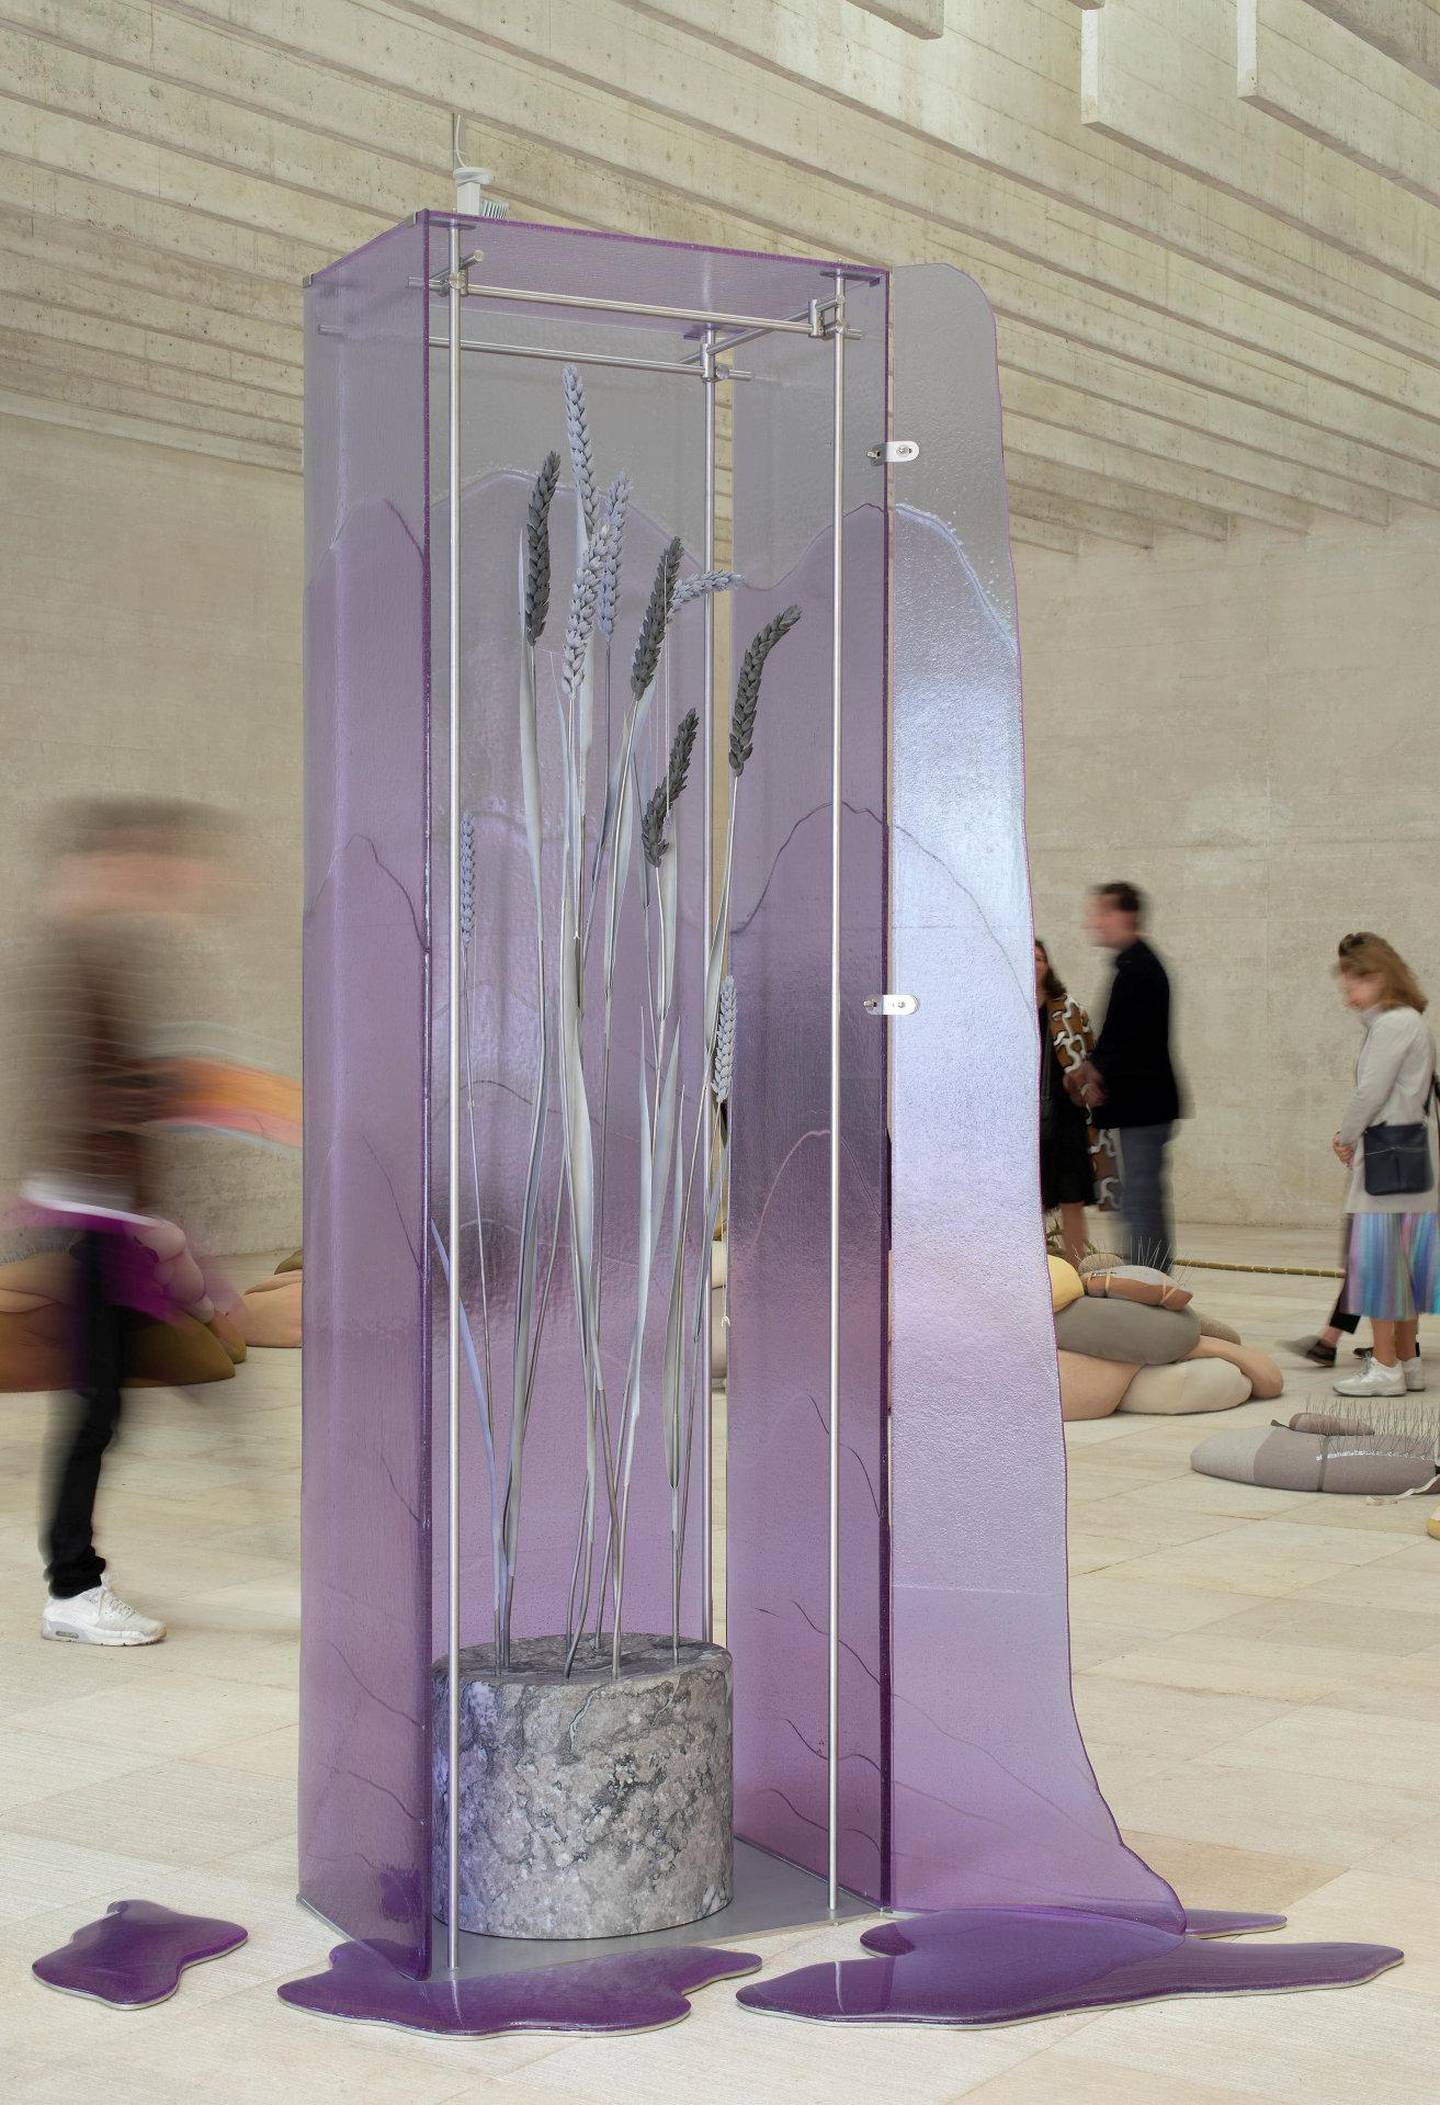 Den ene av Ane Graffs «States of inflammation»-installasjoner: «Glass cabinet in Fuchsia glass». FOTO: FINNISH NATIONAL GALLERY, PIRJE MYKKÄNEN